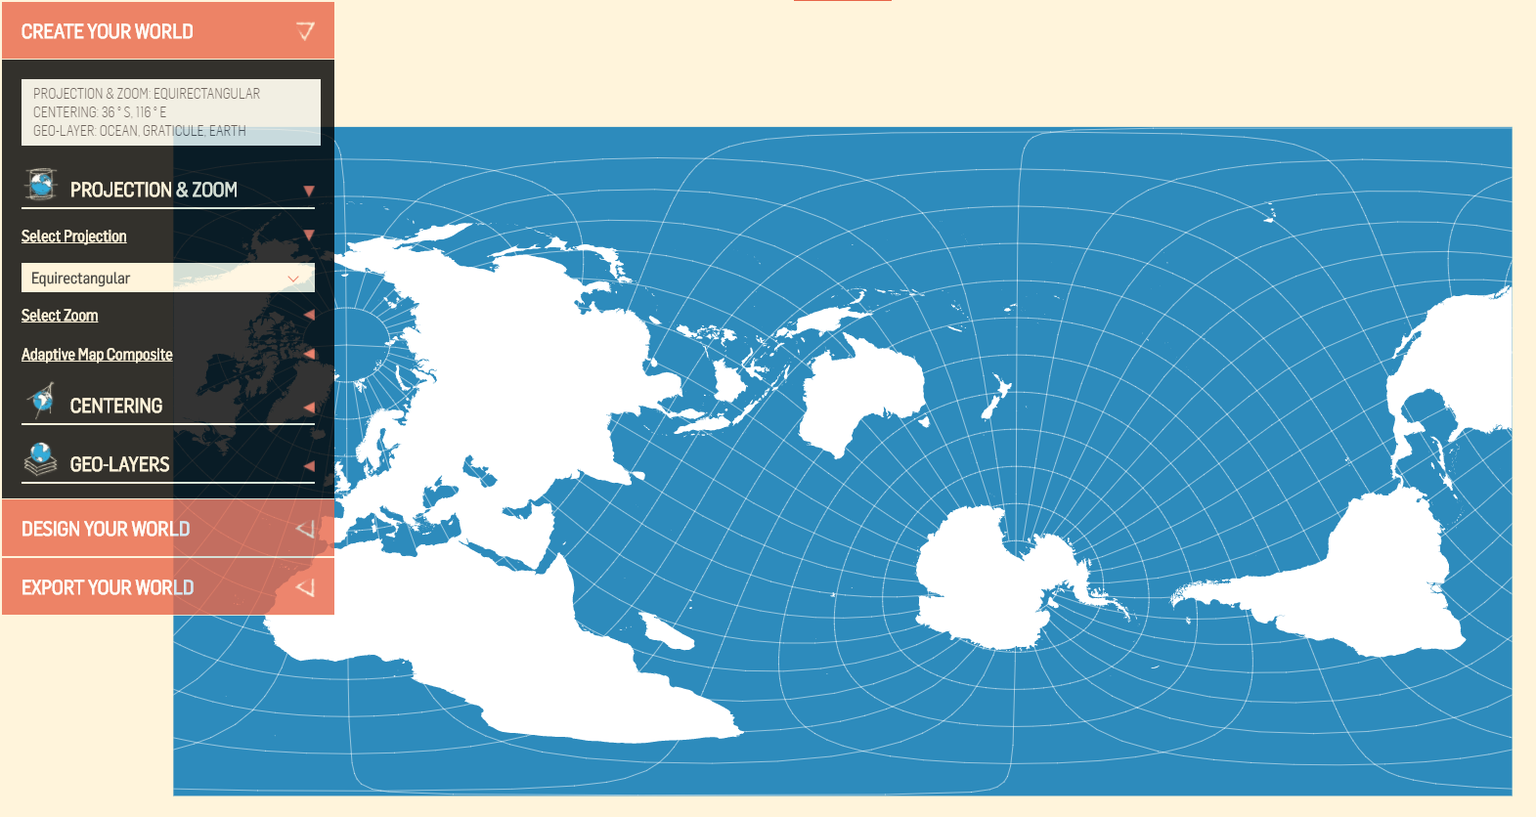 Die Antarktis im Zentrum der Welt: Würden Pinguine eine Weltkarte zeichnen, sähe sie vermutlich so aus.&nbsp;